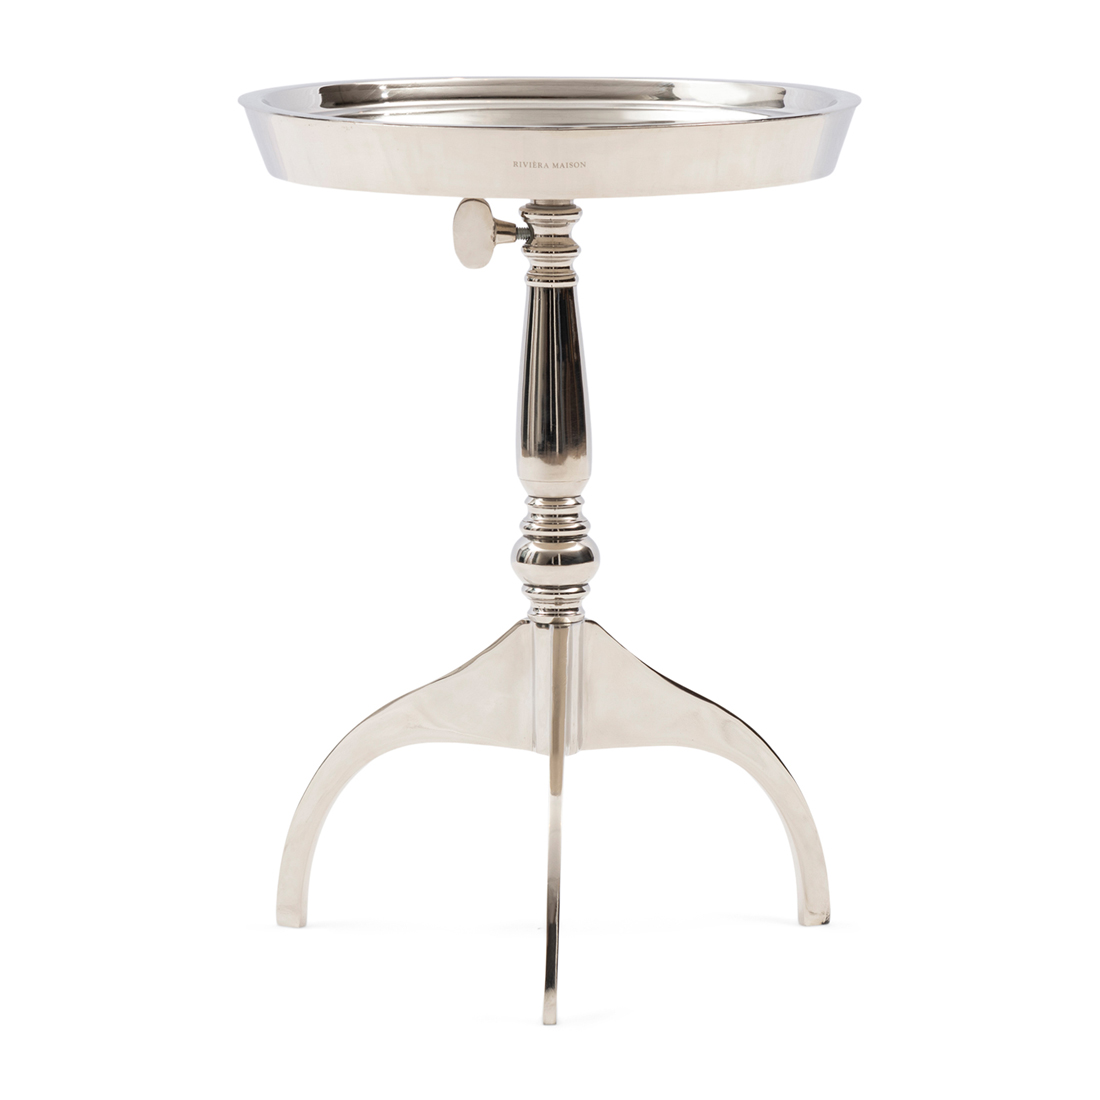 Riviera Maison Bijzettafel Verstelbaar - Crosby Adjustable End Table - Zilver